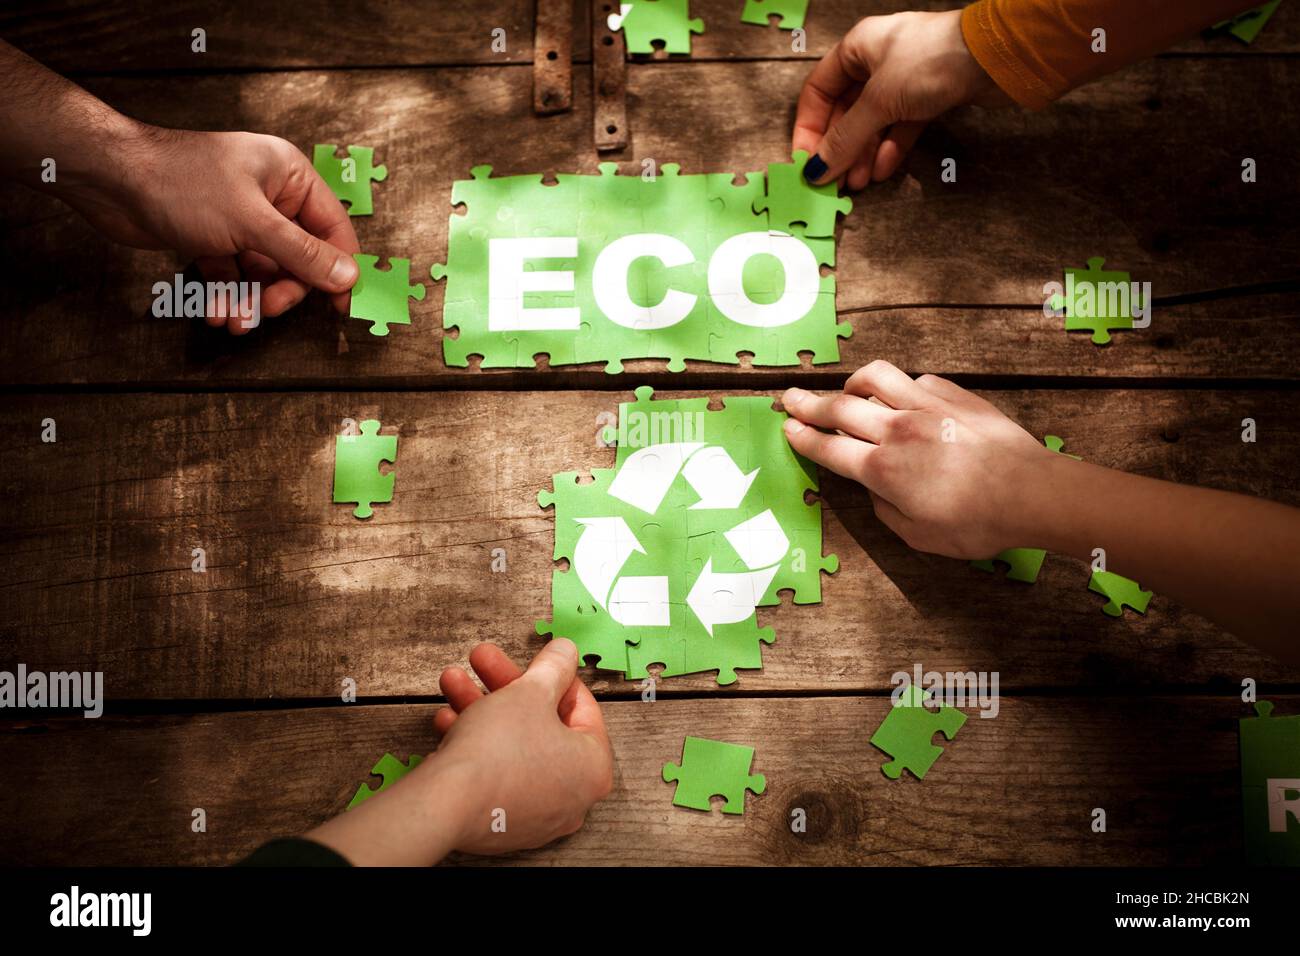 Amigos que se unen a la palabra ECO y al símbolo de reciclaje en la mesa Foto de stock